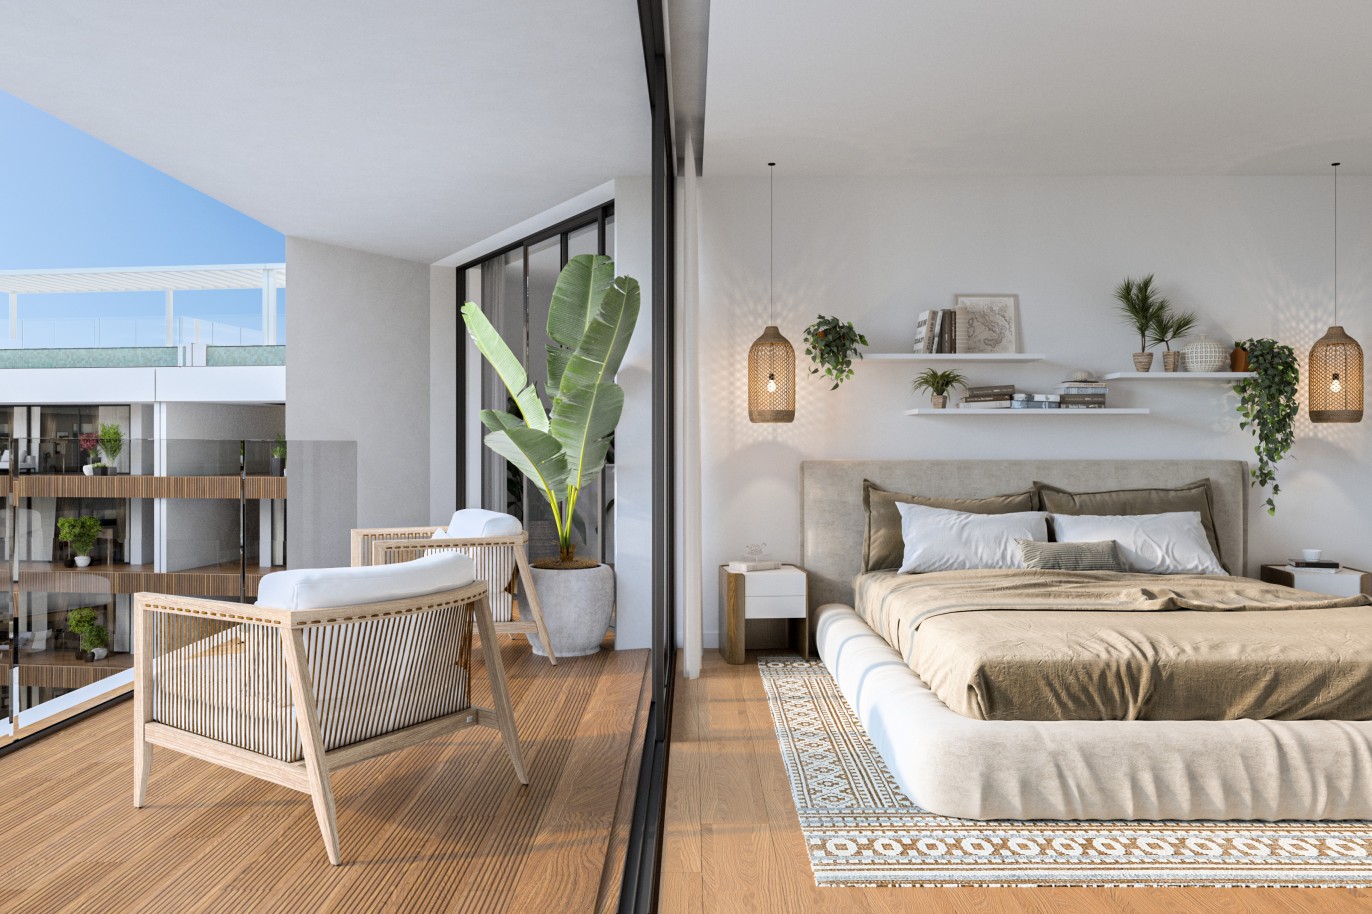 Appartements neufs avec vue sur mer, 1, 2 & 3 chambres, à vendre à Olhão, Algarve_243832